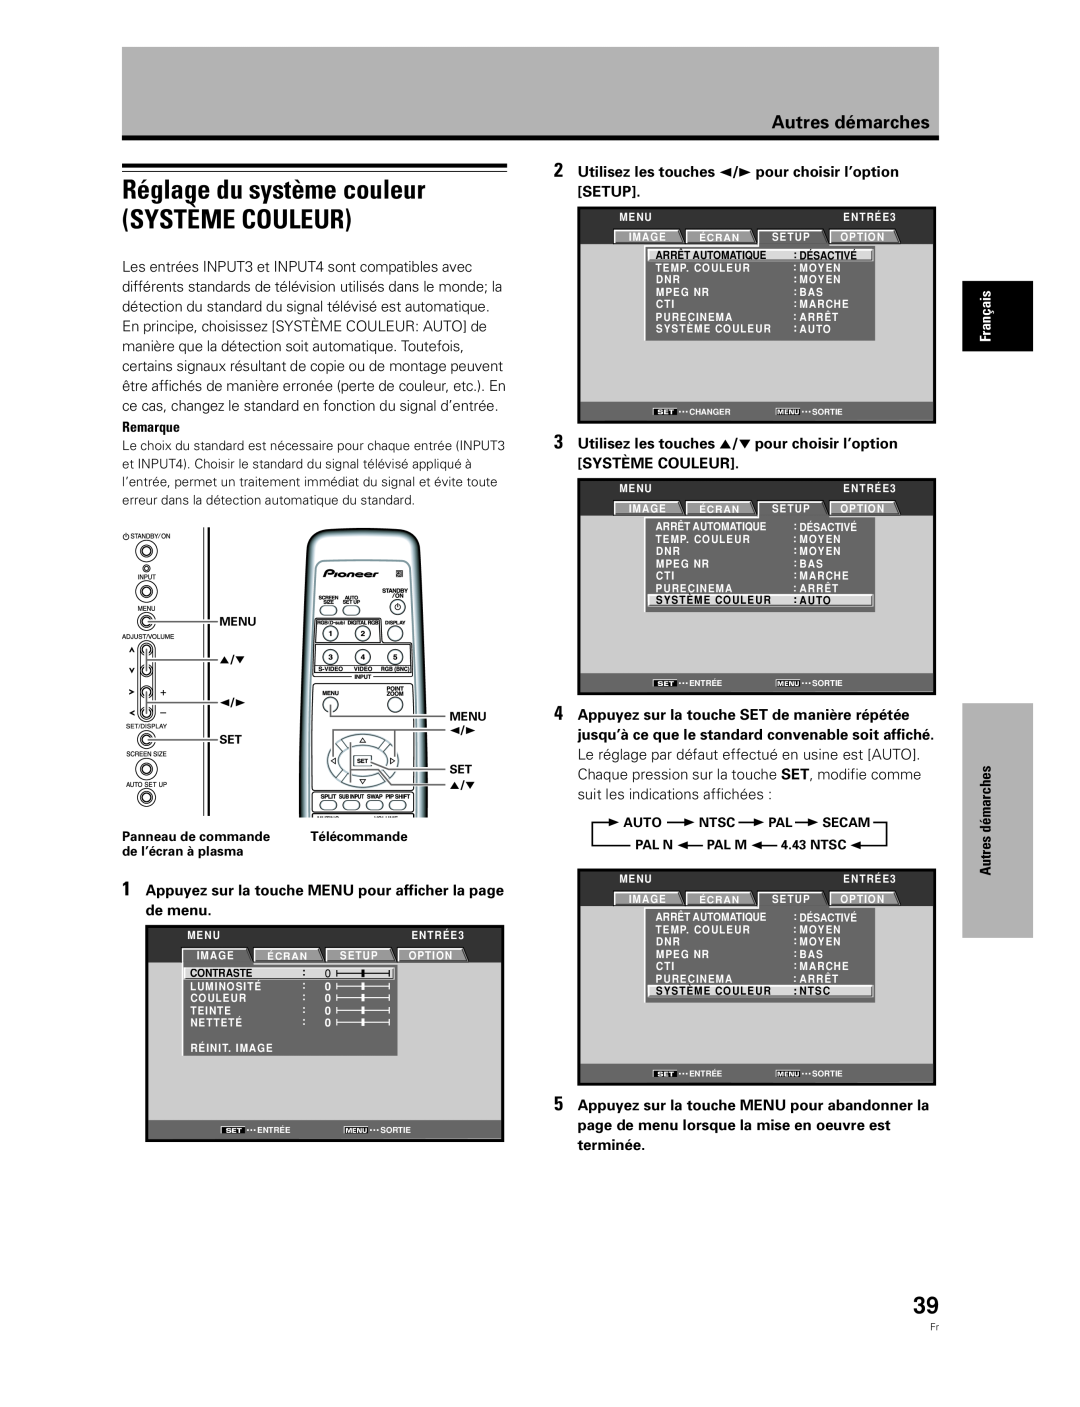 Pioneer PDA-5003 Réglage du système couleur SYSTÈME COULEUR, Appuyez sur la touche MENU pour afficher la page de menu 